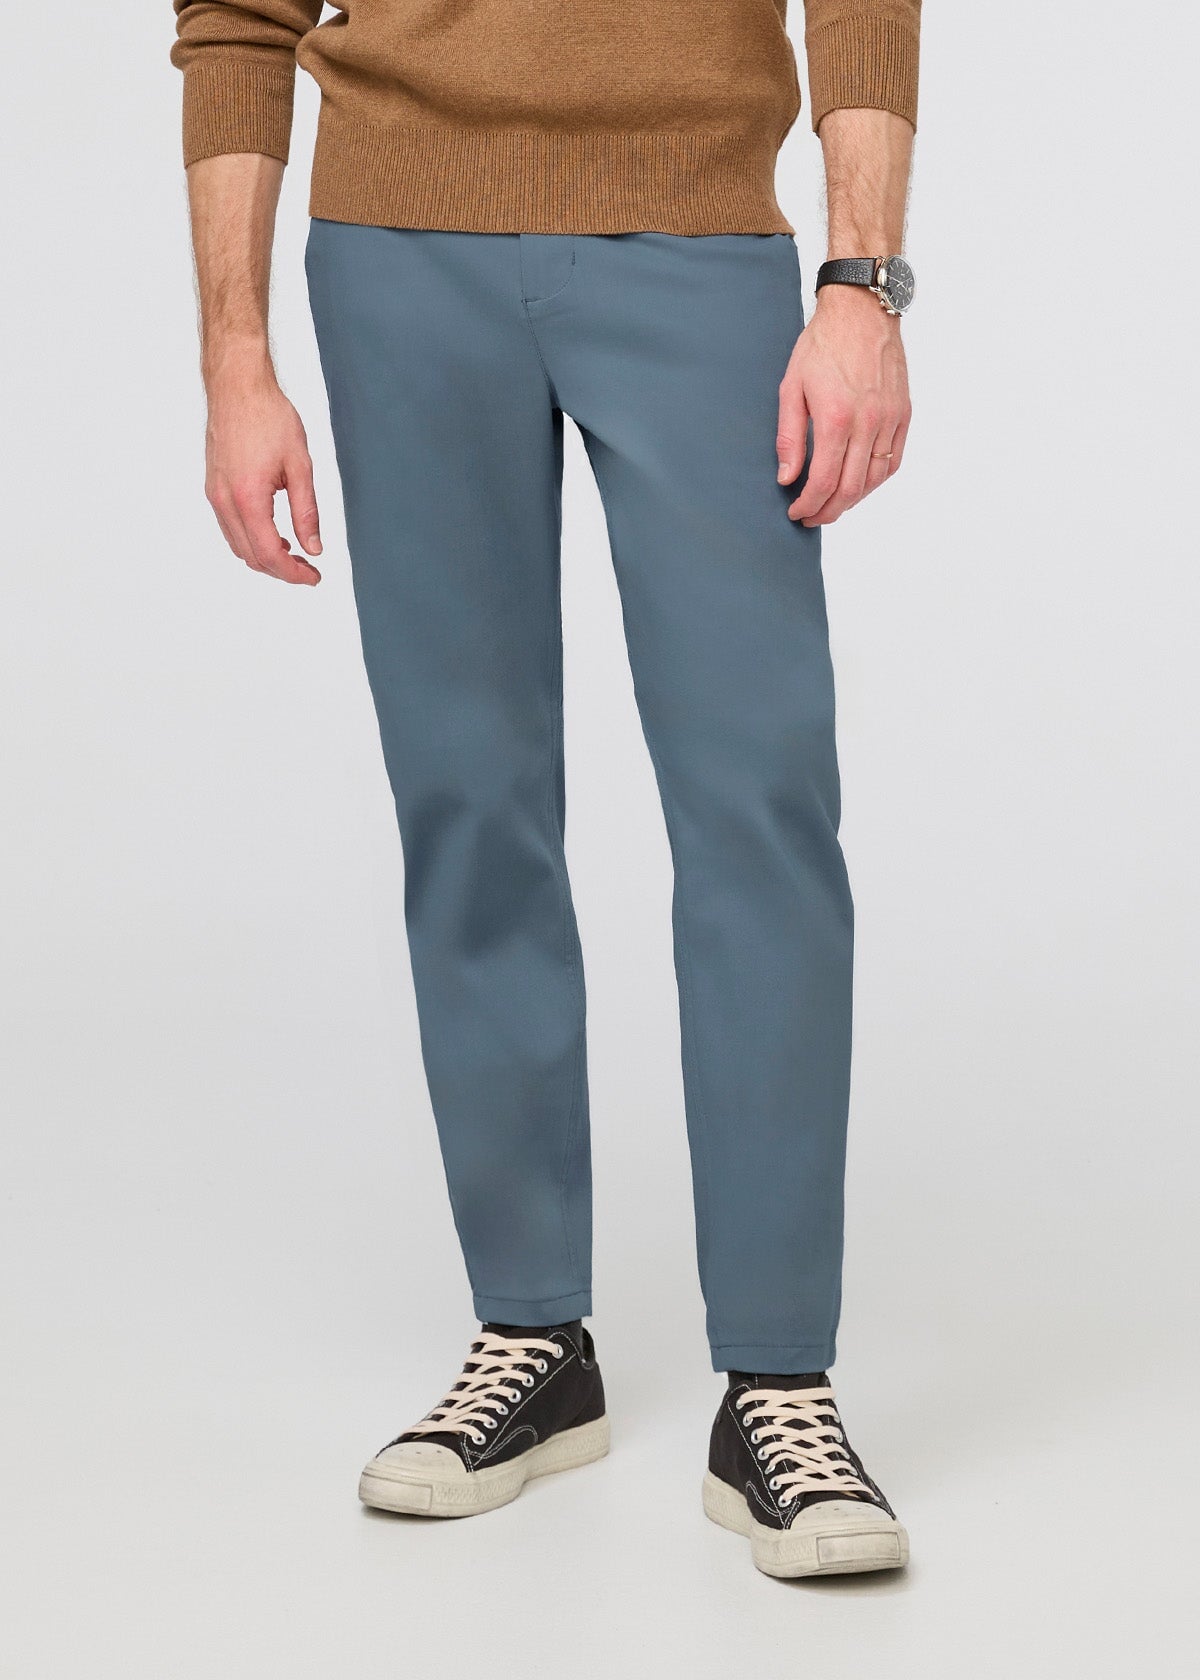 Cotton Flex Solid Women's Pants Pista Color – Stilento